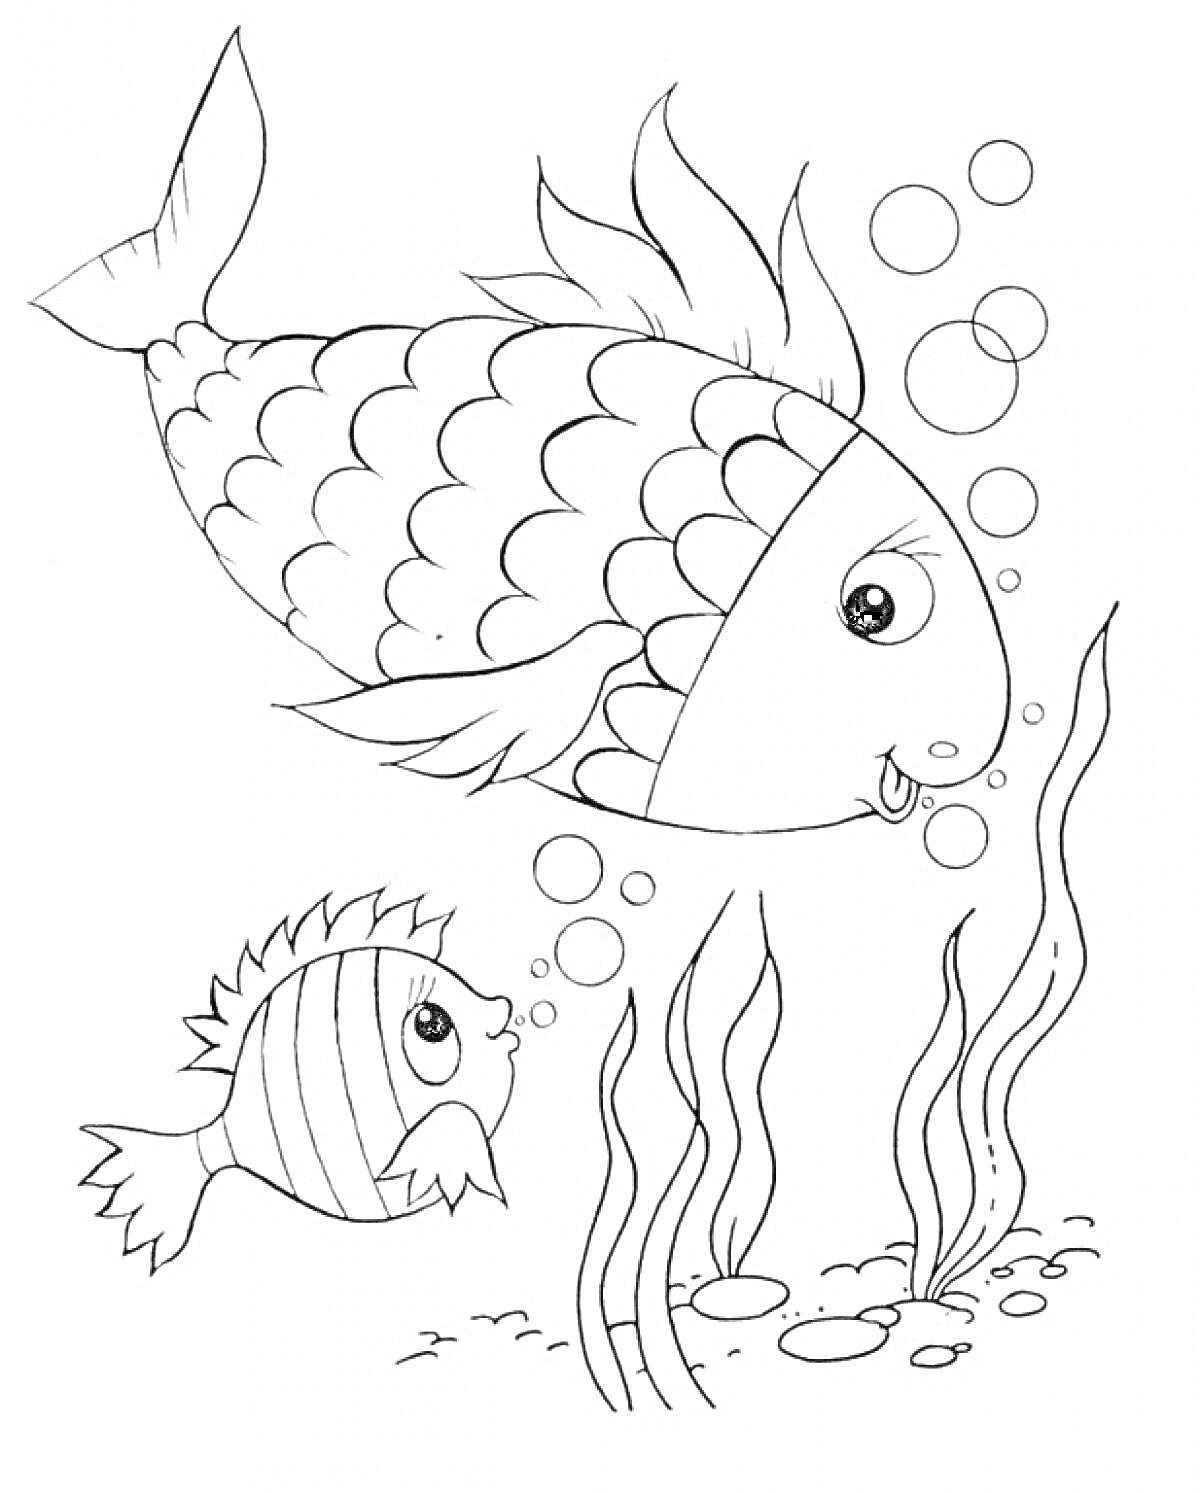 Раскраска Две рыбы с пузырьками в окружении водорослей и камней